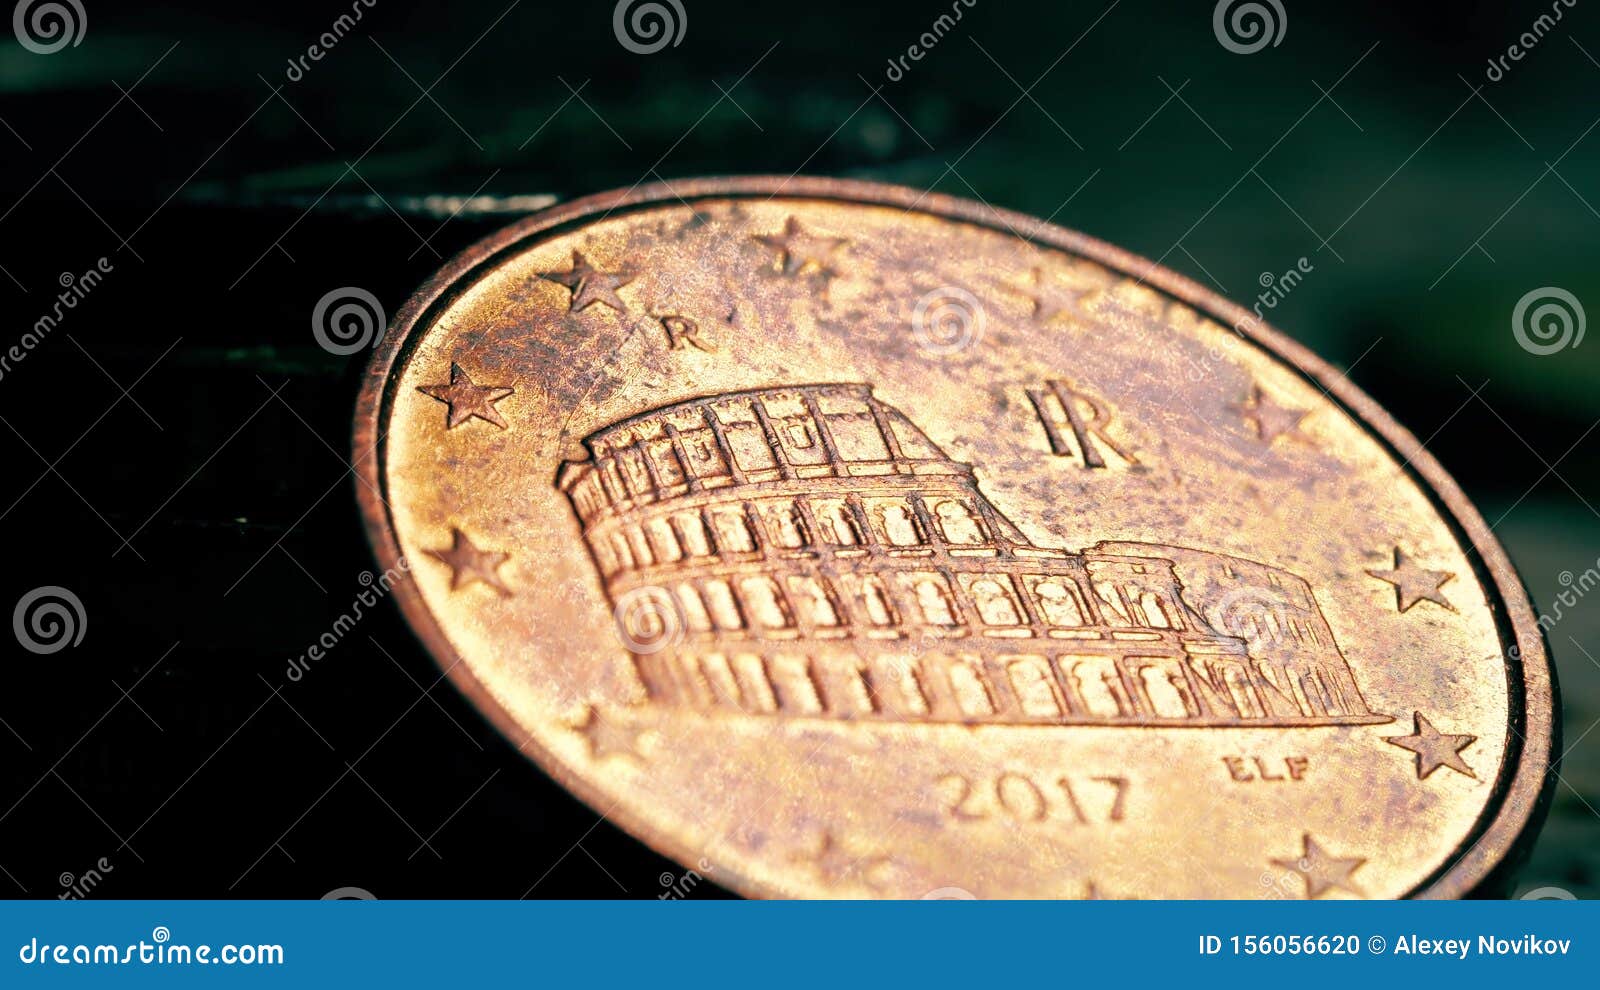 bekende-roman-colloseum-op-de-italiaanse-munt-van-eurocent-macroschoen-bekend-156056620.jpg